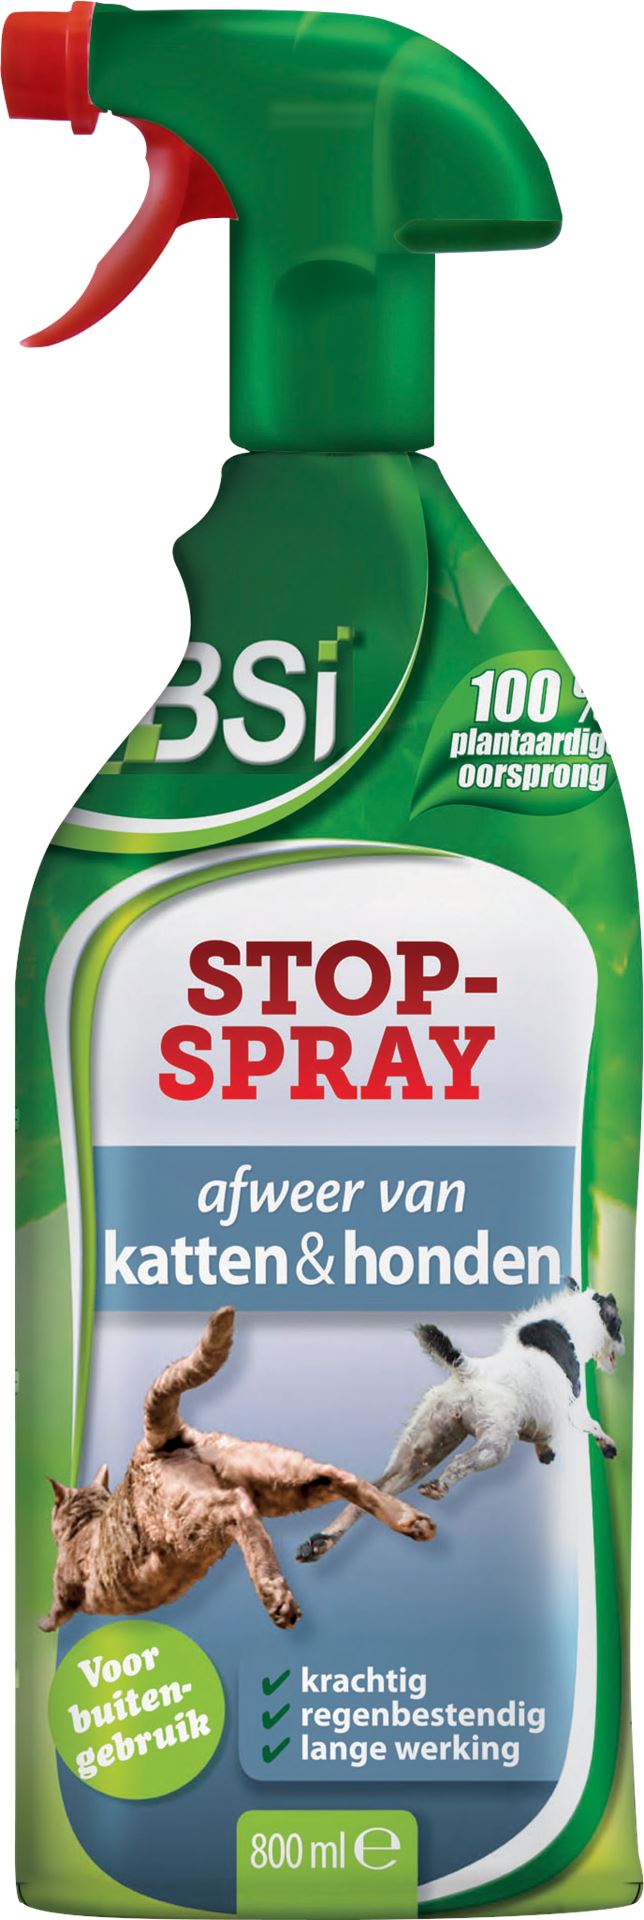 Stop-spray-800ml-katten-en-hondenafweer-voor-binnen-en-buiten